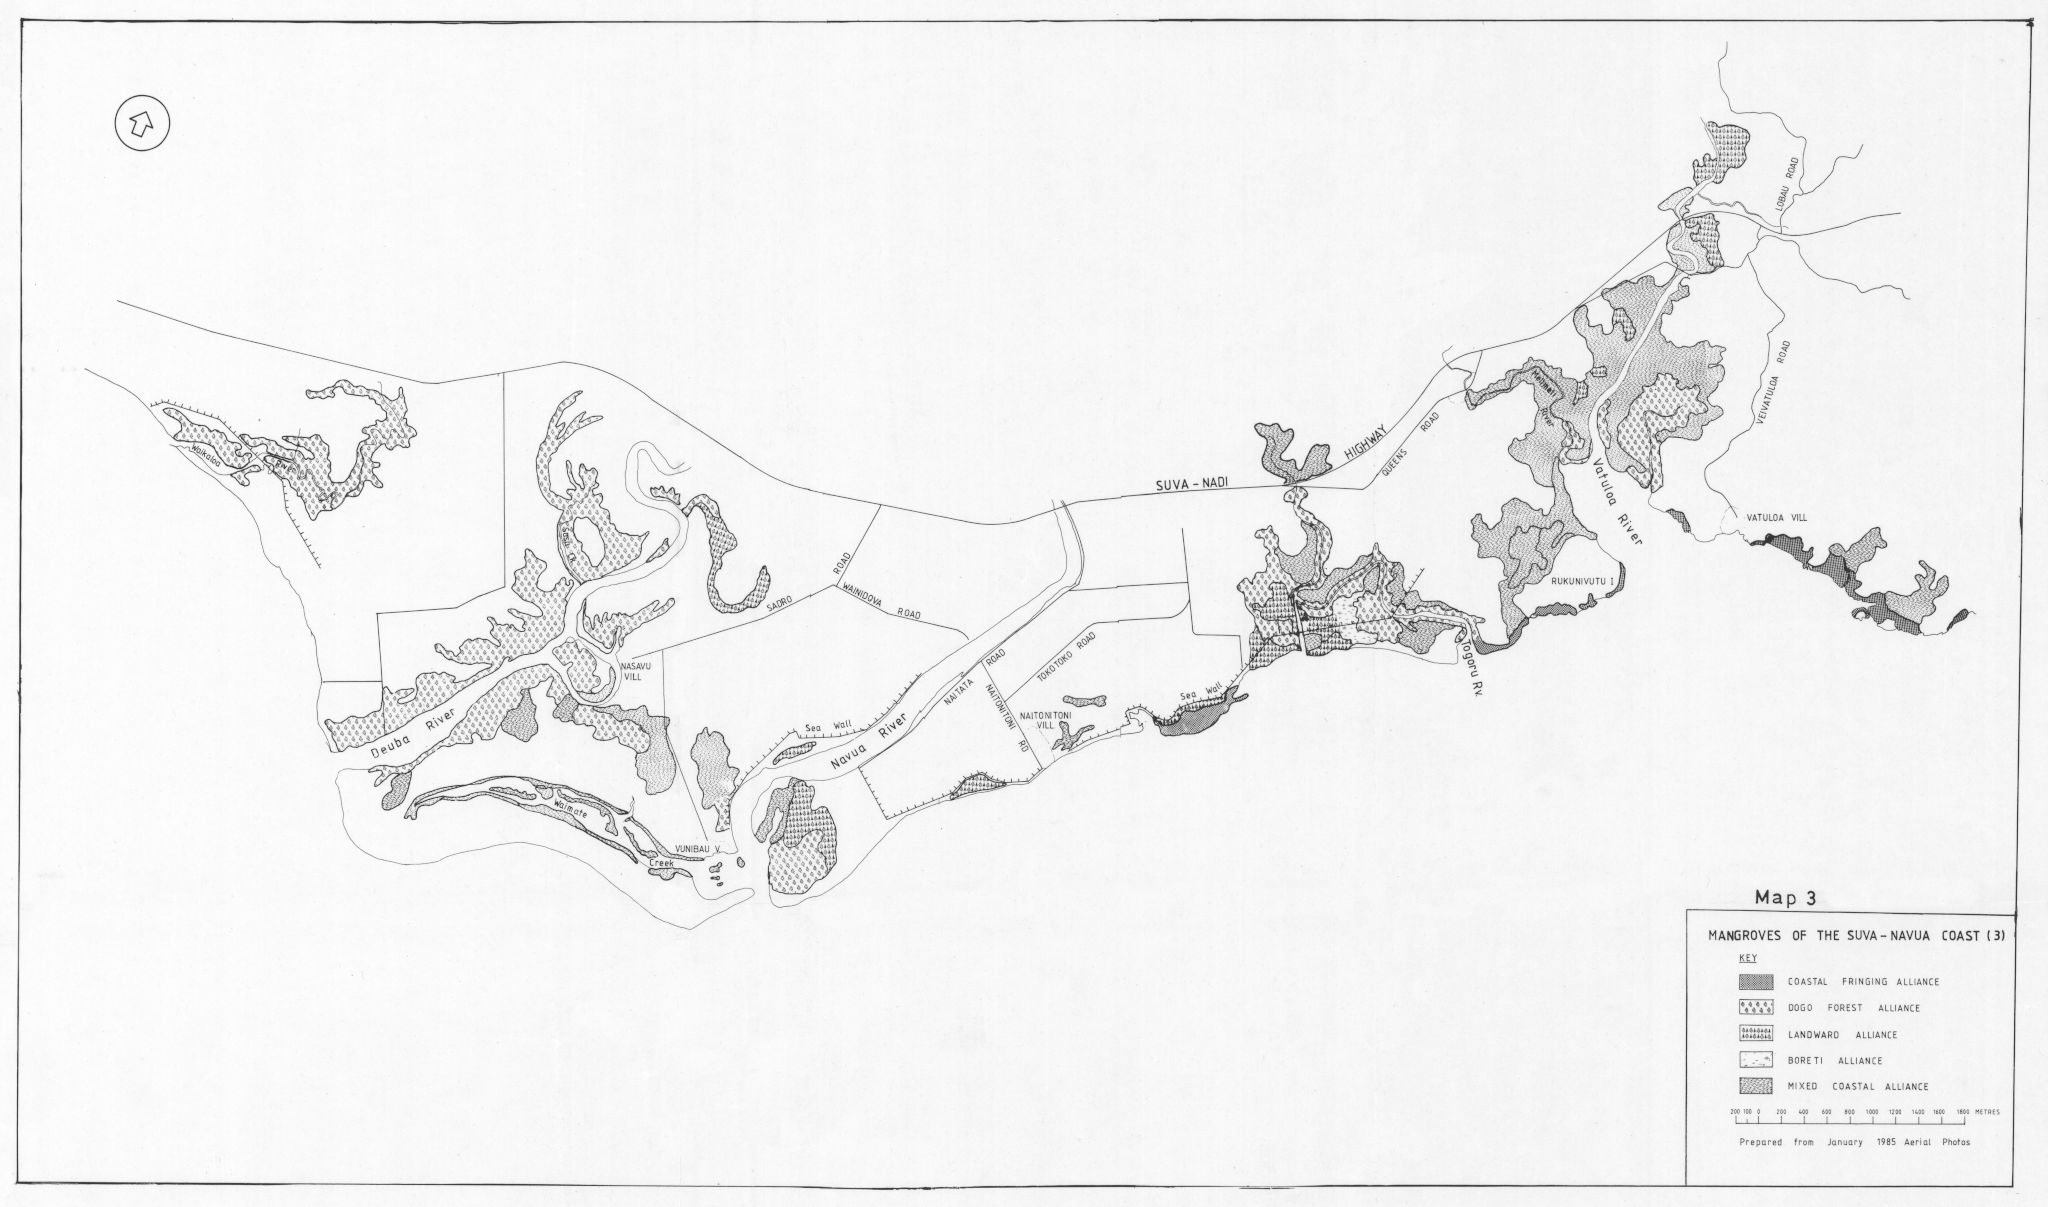 Map-3-Mangroves-of-the-Suva-Navua-Coast